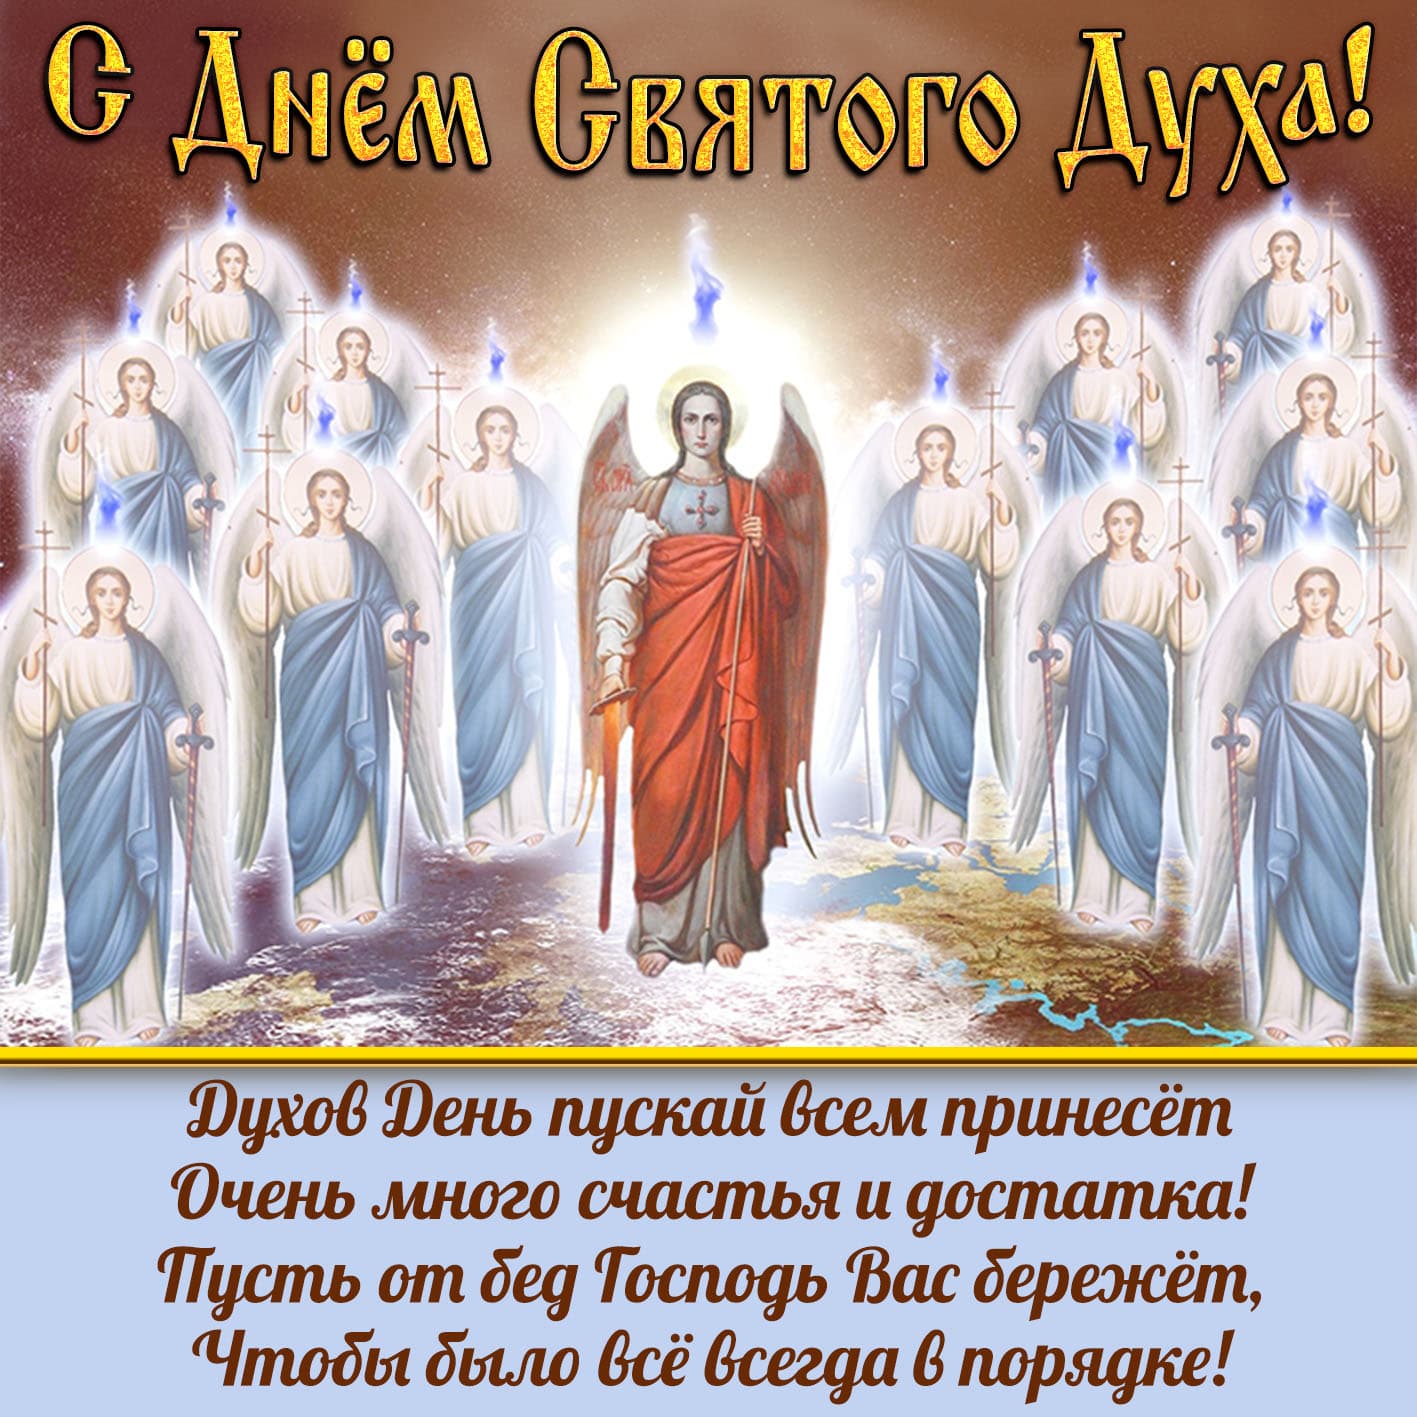 Православная поздравительная картинка с днем святого духа